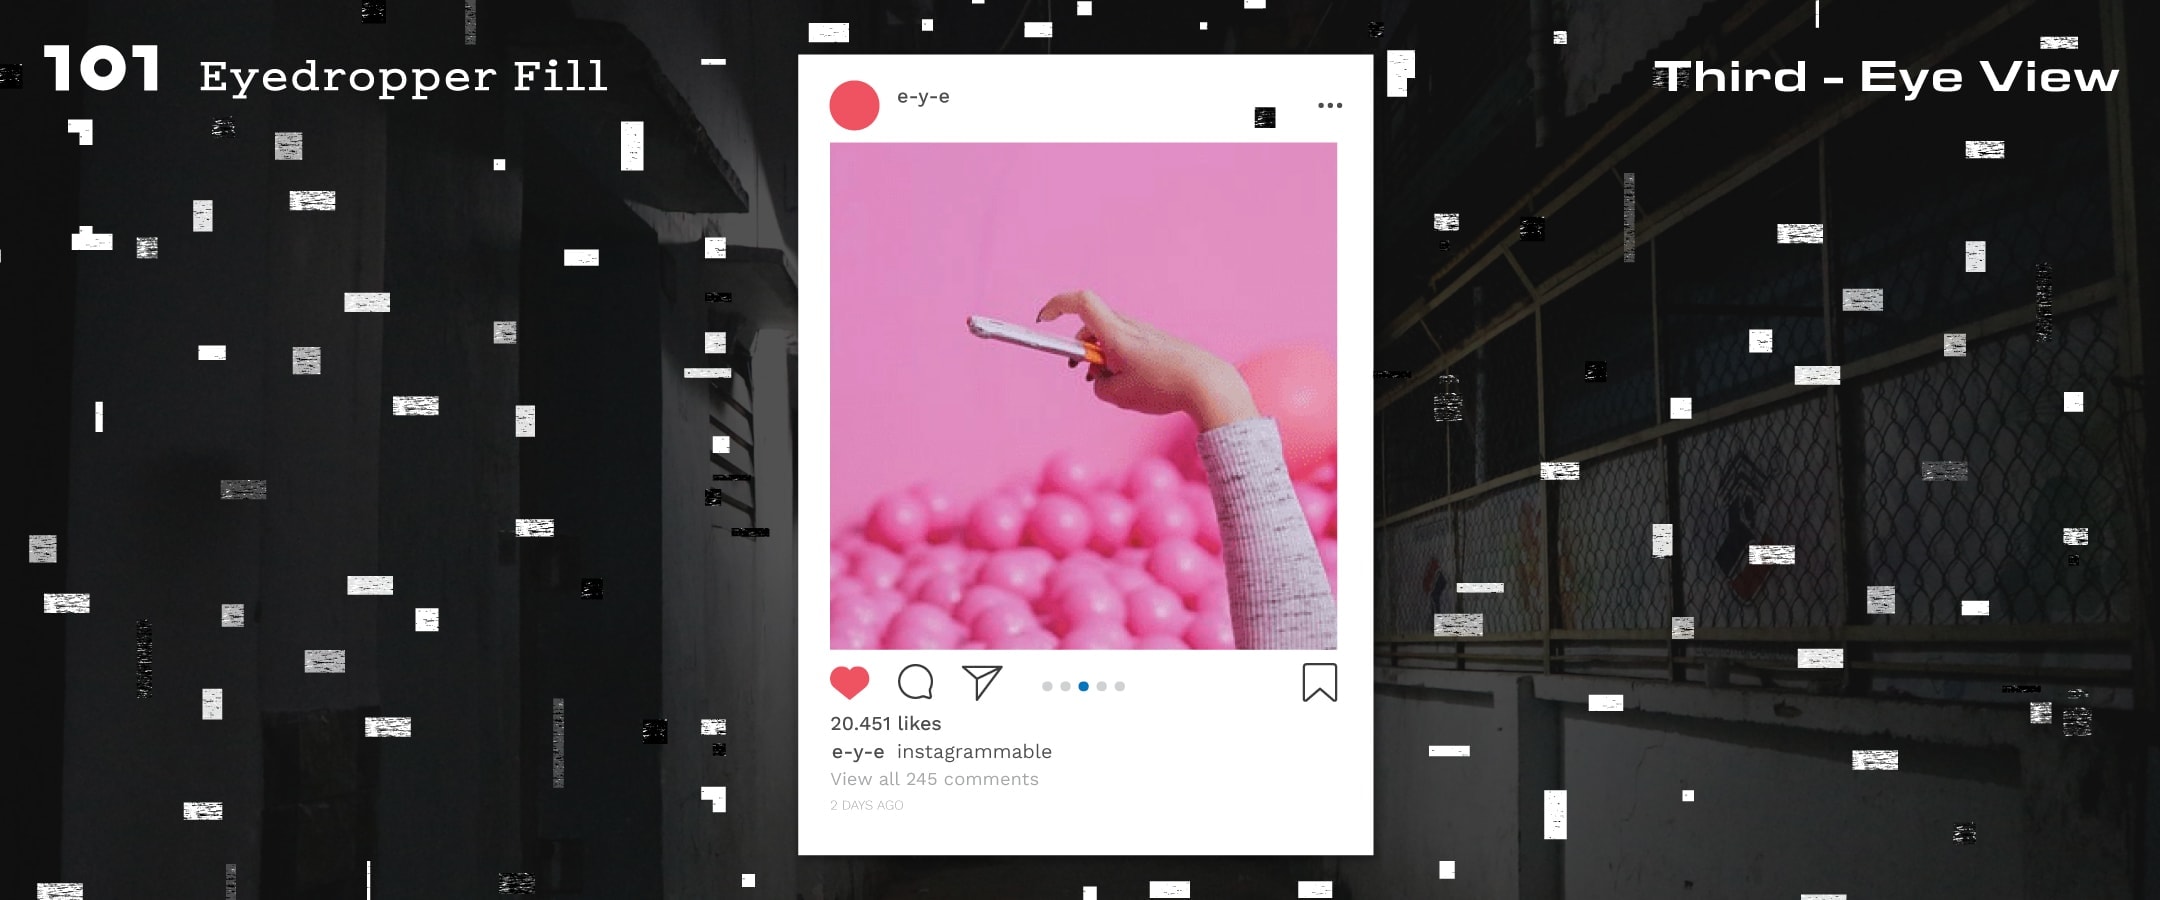 เมื่อแนวคิด ‘ทำทุกที่ให้ Instagrammable’ กำลังพังวงการออกแบบ